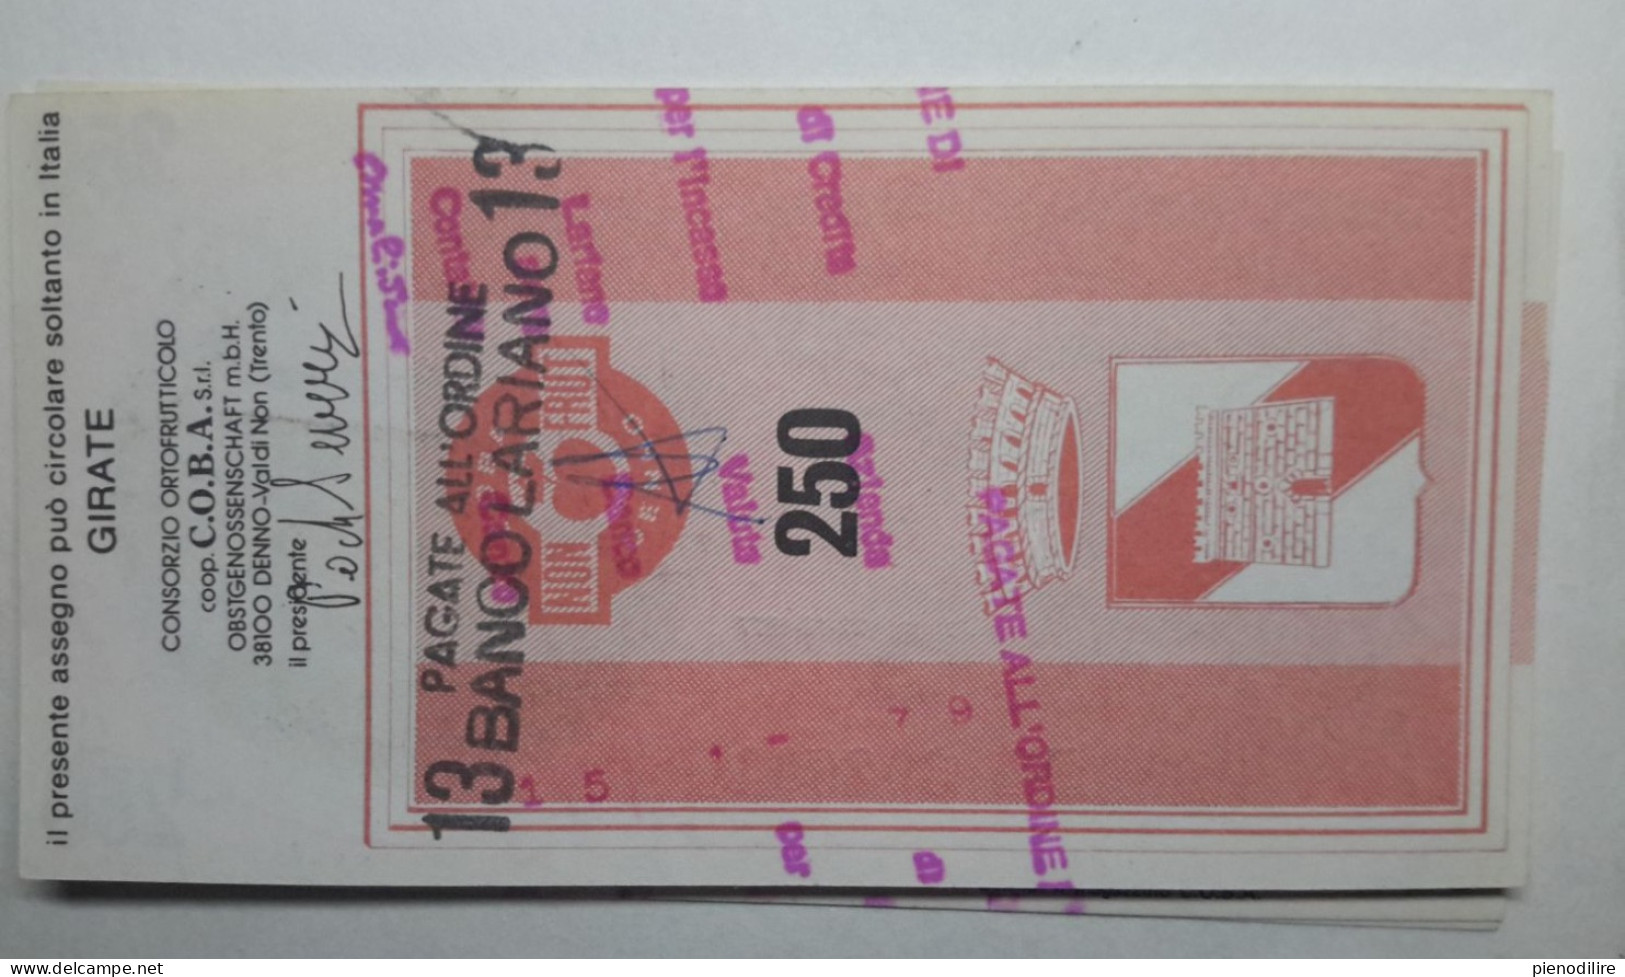 CASSA RURALE DI DENNO 250 LIRE 22.12.1977 C.O.B.A. SRL PAGATA (A.27) - [10] Cheques En Mini-cheques